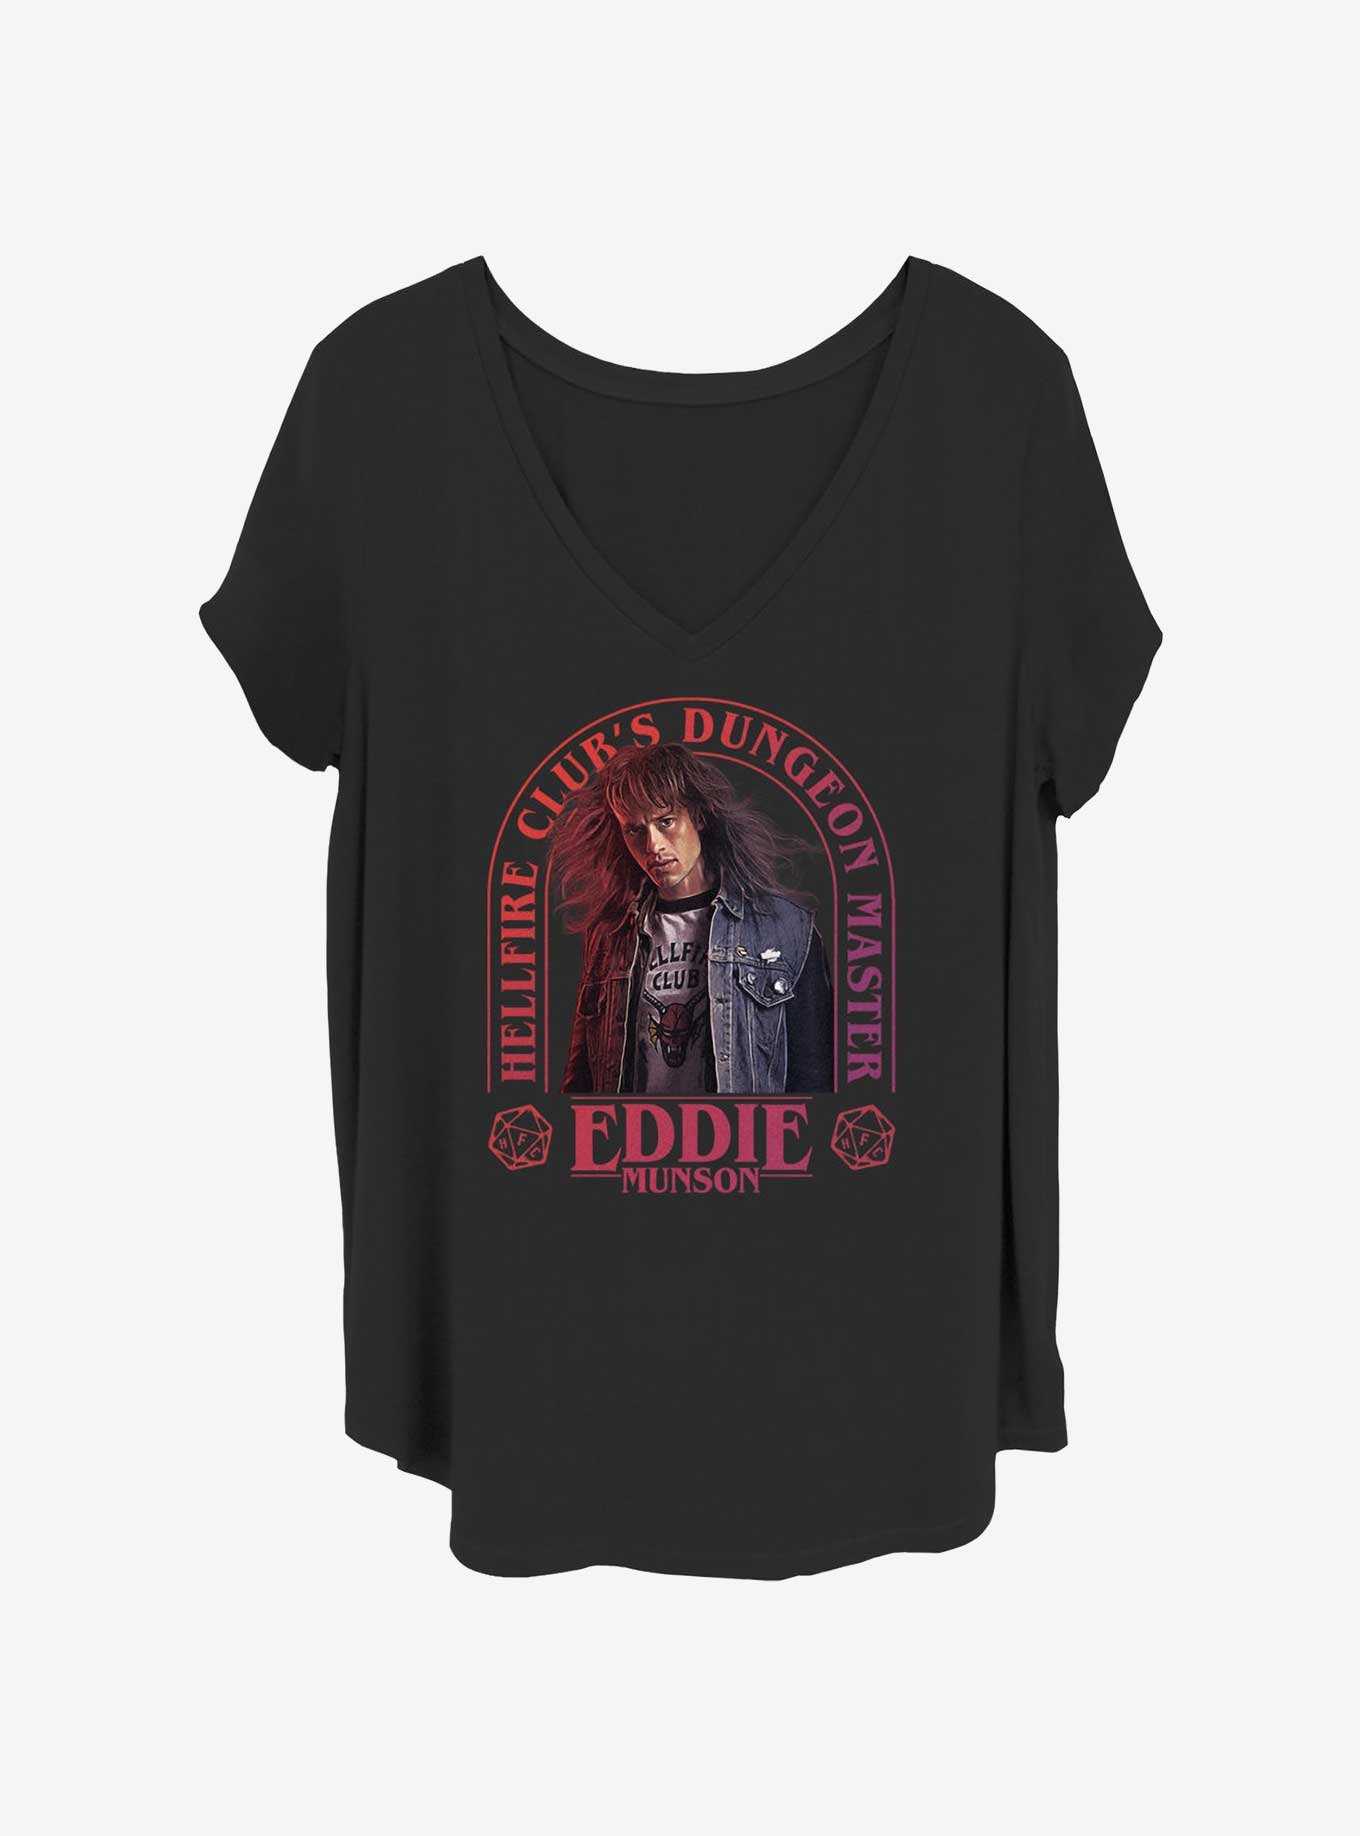 Stranger Things Dungeon Master Eddie Munson Girls T-Shirt Plus Size, , hi-res